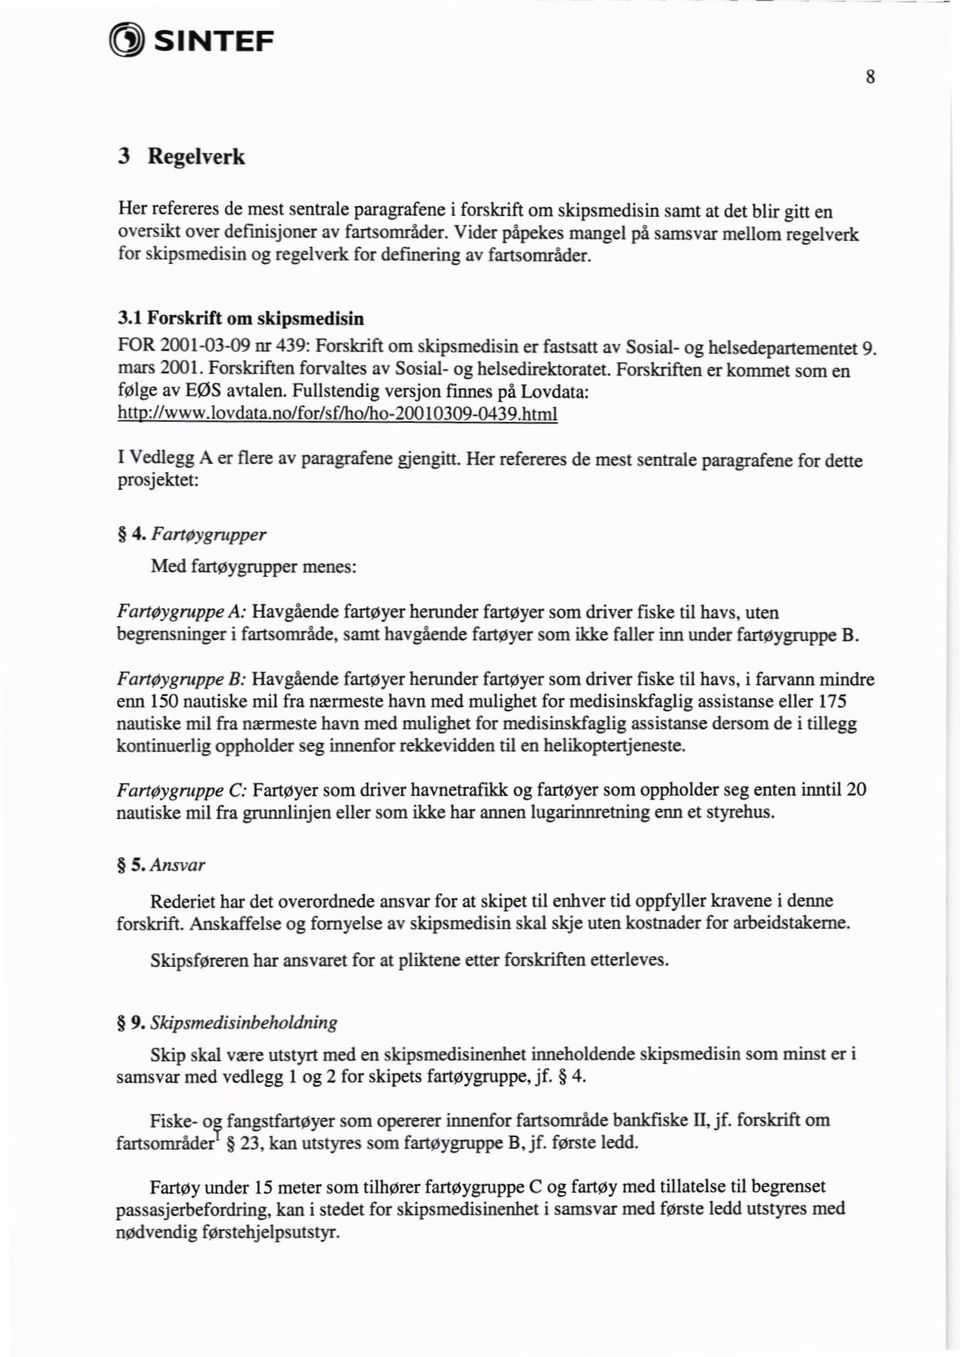 1 Forskrift om skipsmedisin FOR 2001-03-09 nr 439: Forskrift om skipsmedisin er fastsatt av Sosial- og helsedepartementet 9. mars 2001. Forskriften forvaltes av Sosial- og helsedirektoratet.